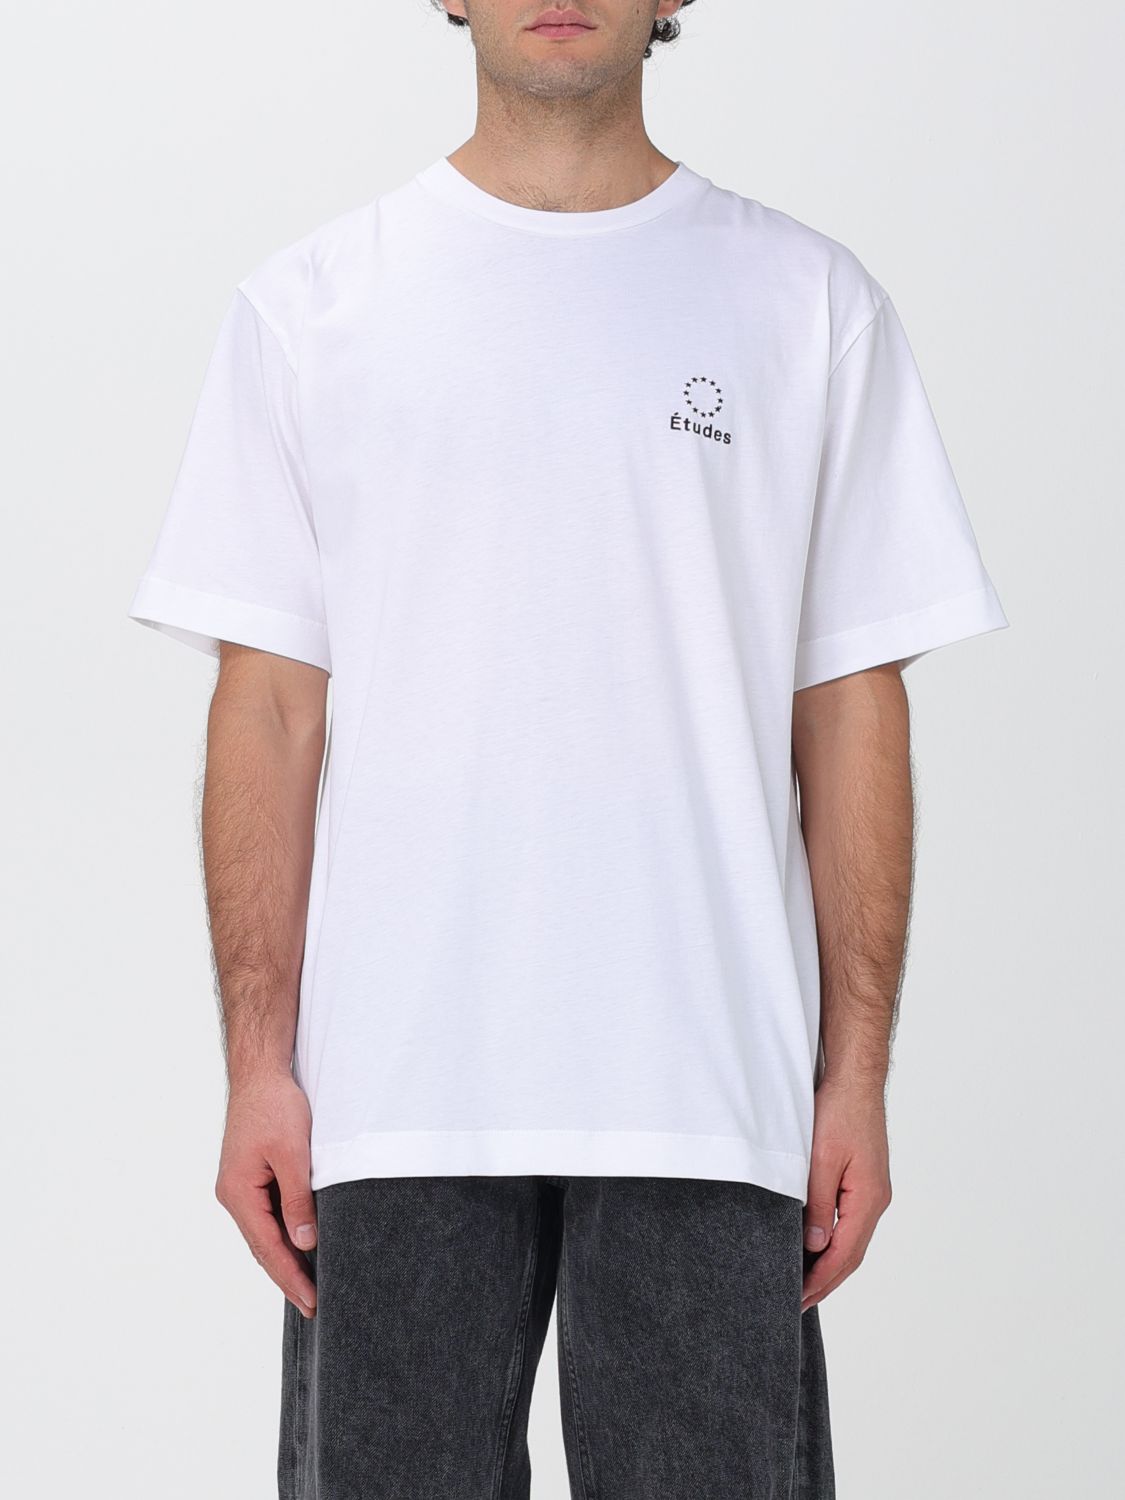 Études T-Shirt ÉTUDES Men colour White